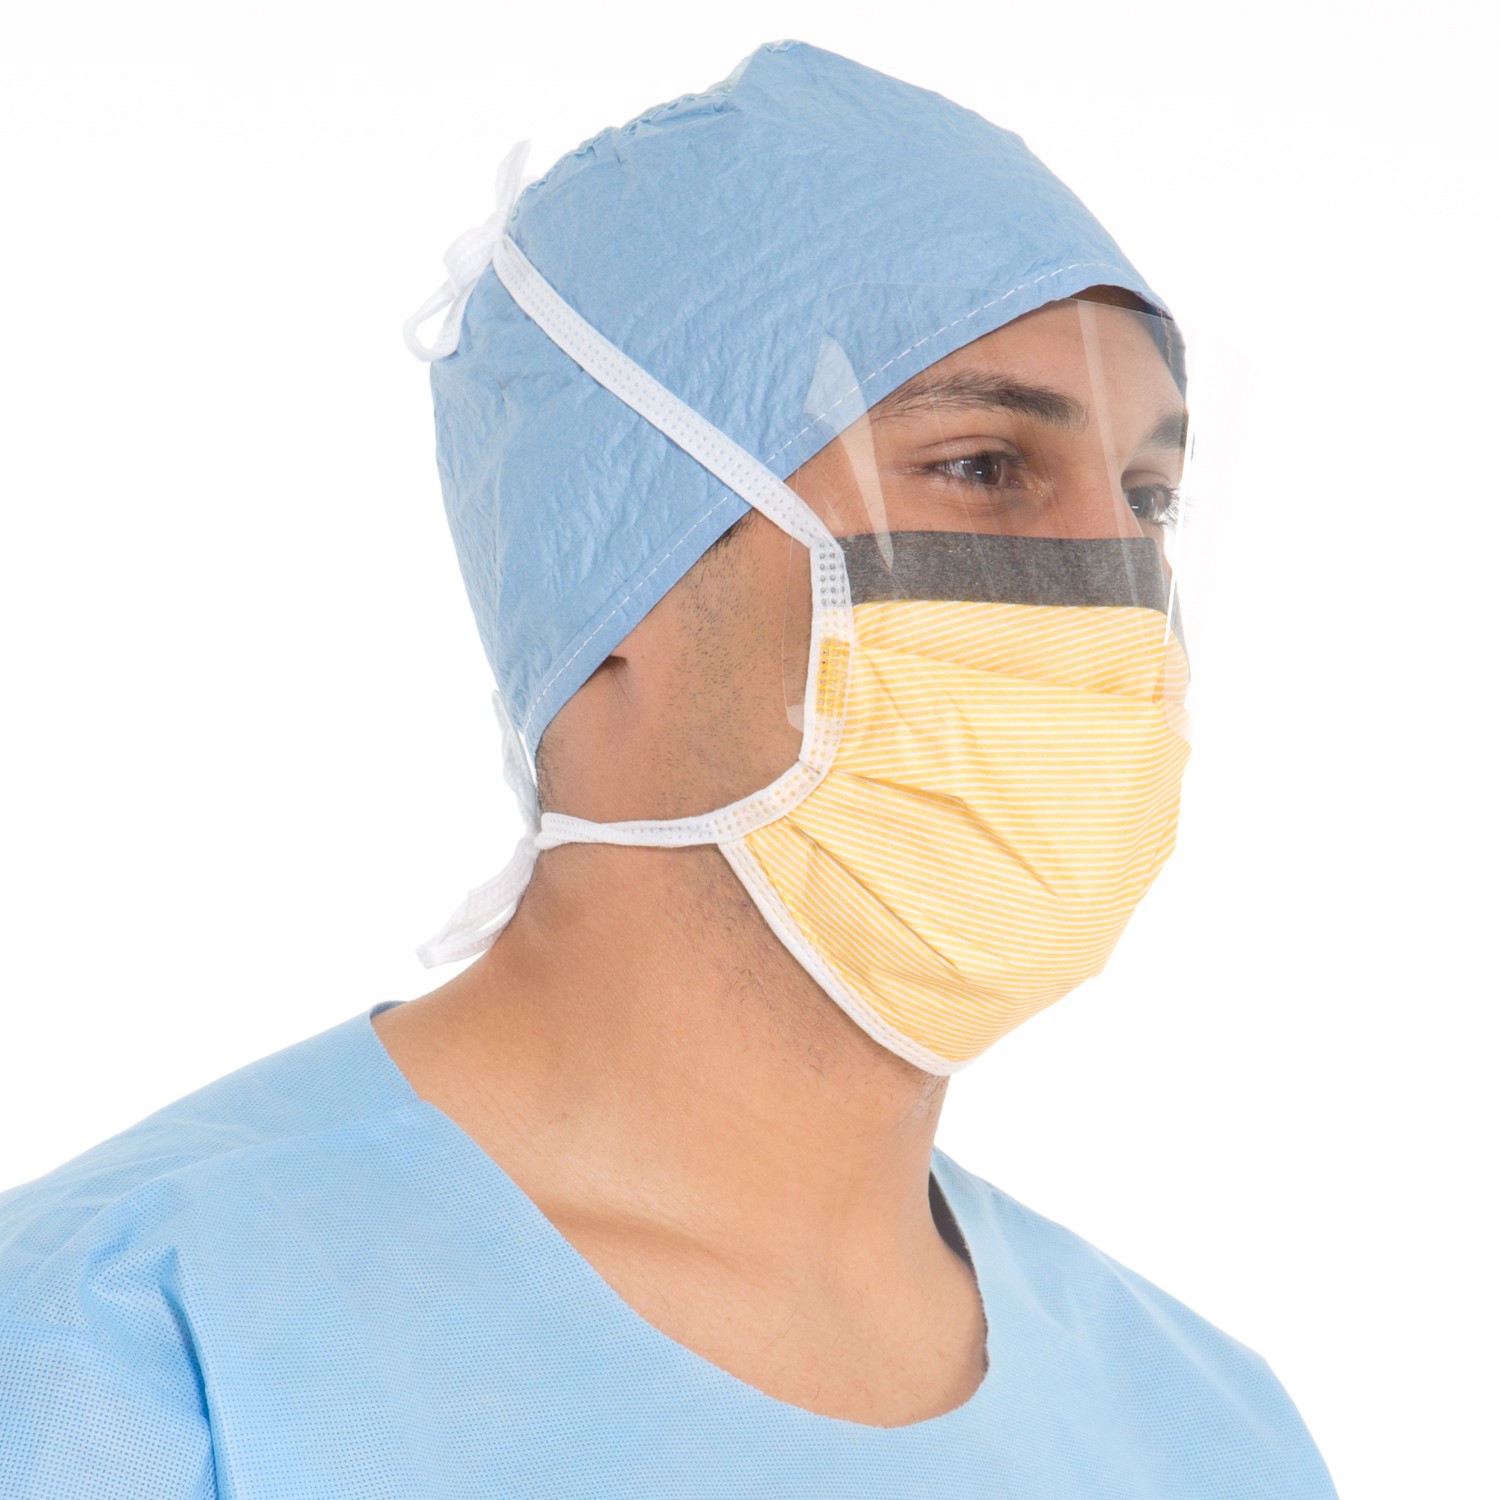 Level 3 Fog-Free Surgical Mask with SO SOFT* Lining, Visor, Orange